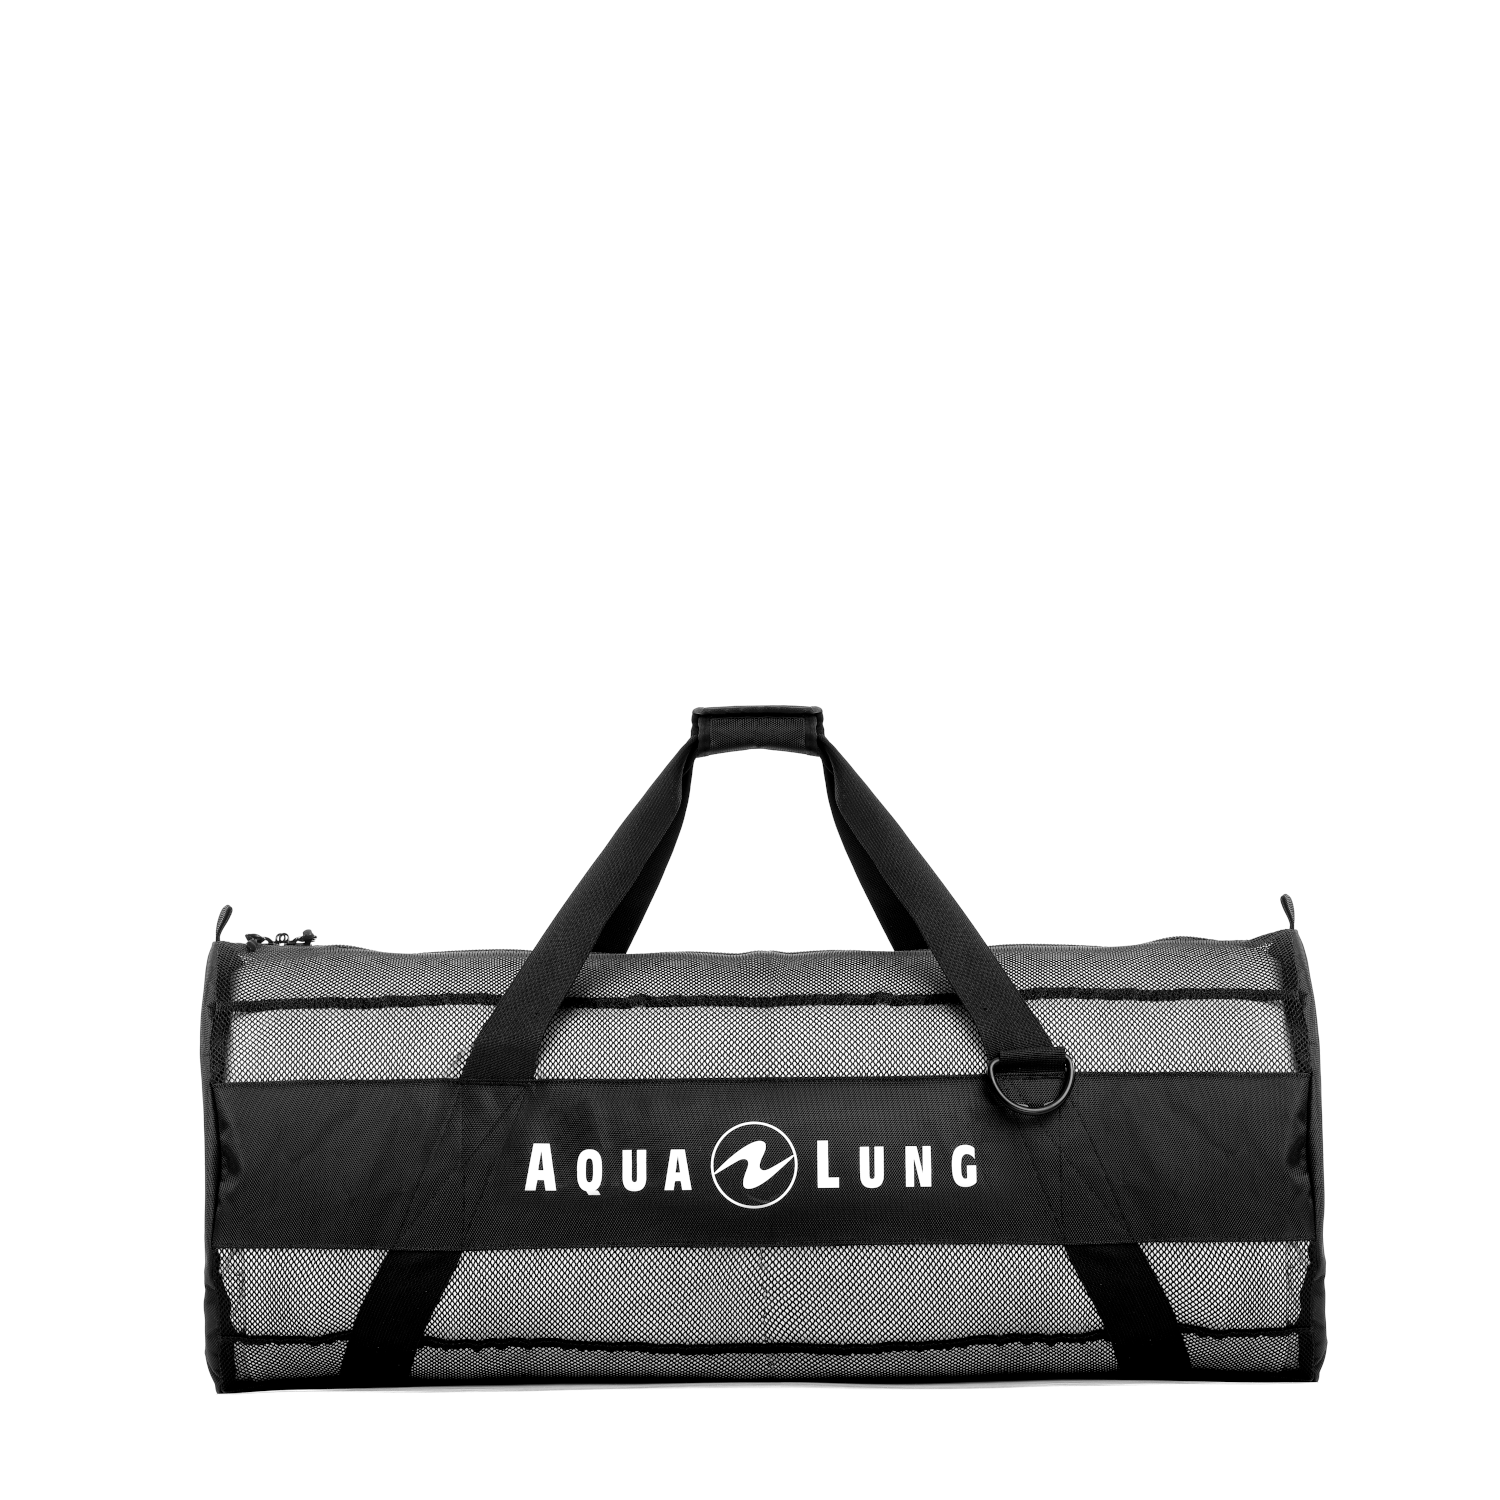 Aqualung – Adventure Mesh Bag